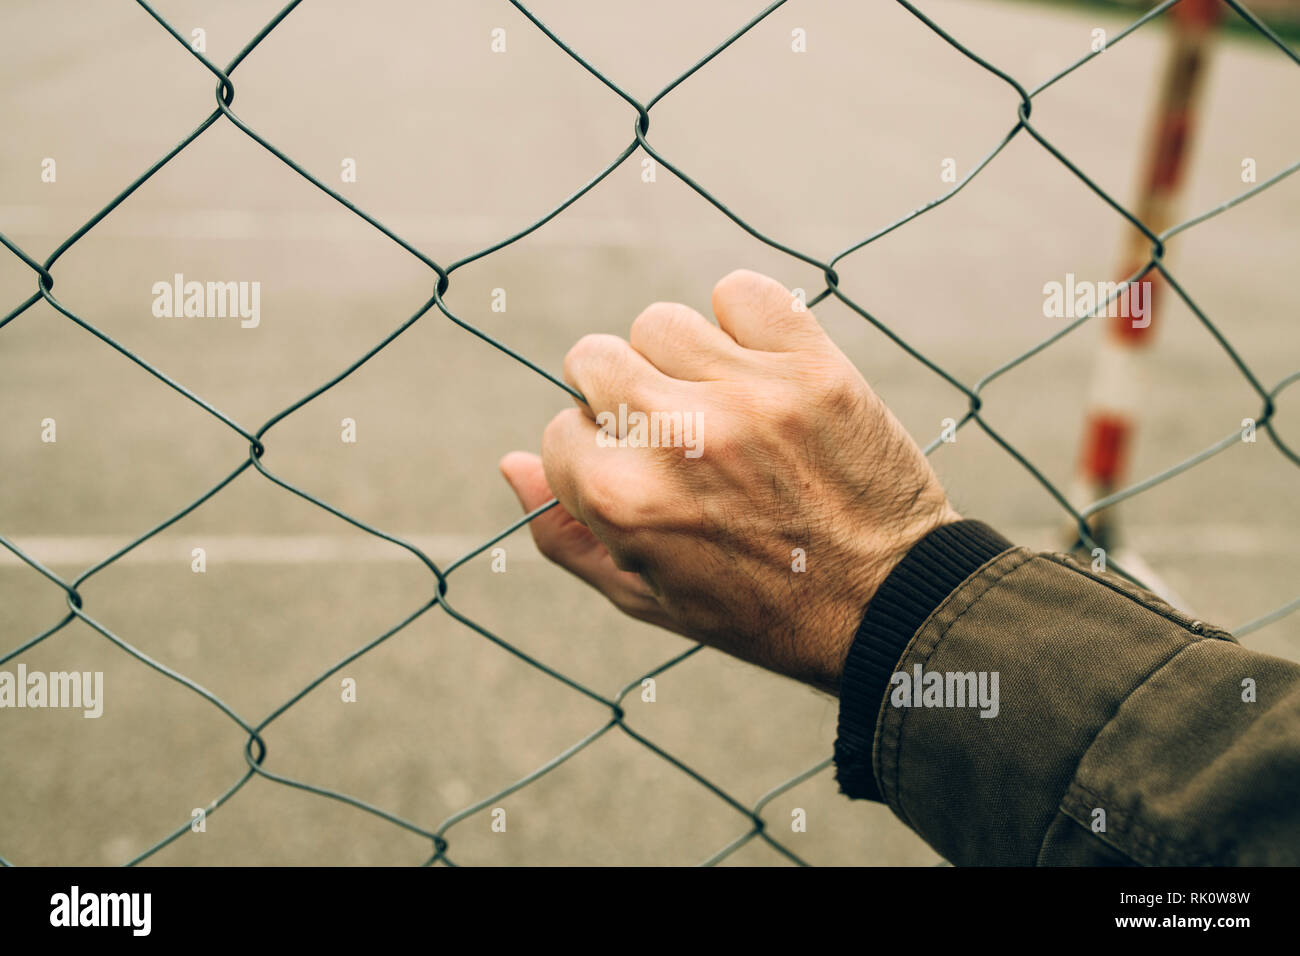 Maschio sul lato opaco recinzione, immigrazione clandestina concetto Foto Stock